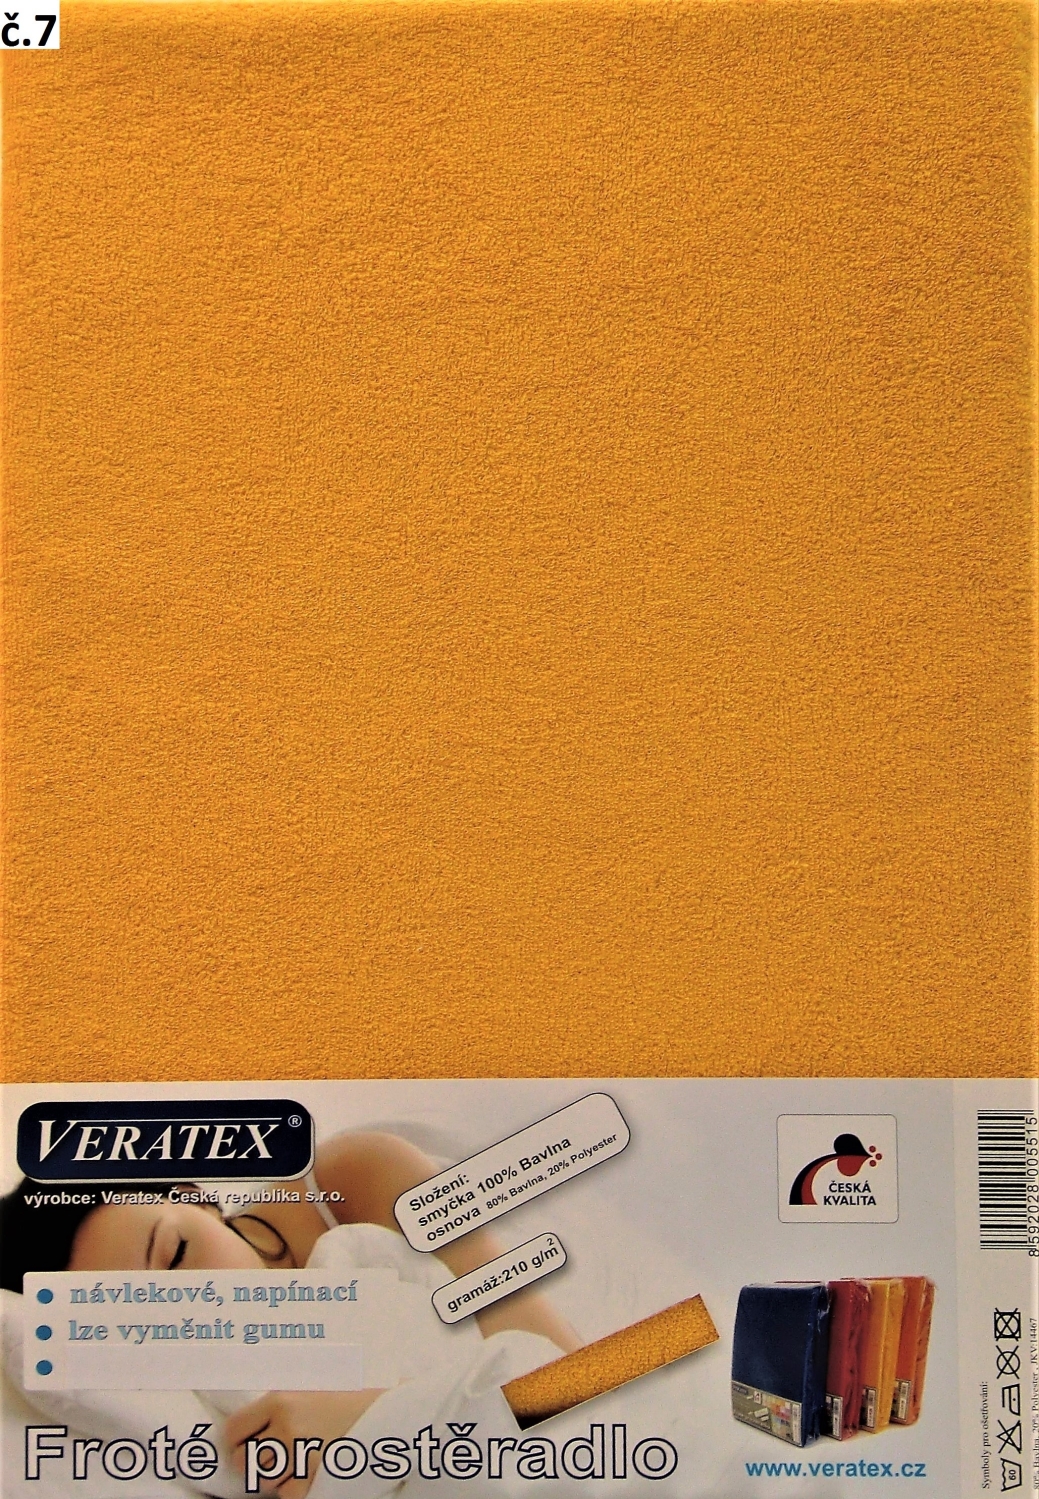 Veratex Froté prostěradlo dvoulůžko 180x200/20cm (č. 7- sytě žlutá)